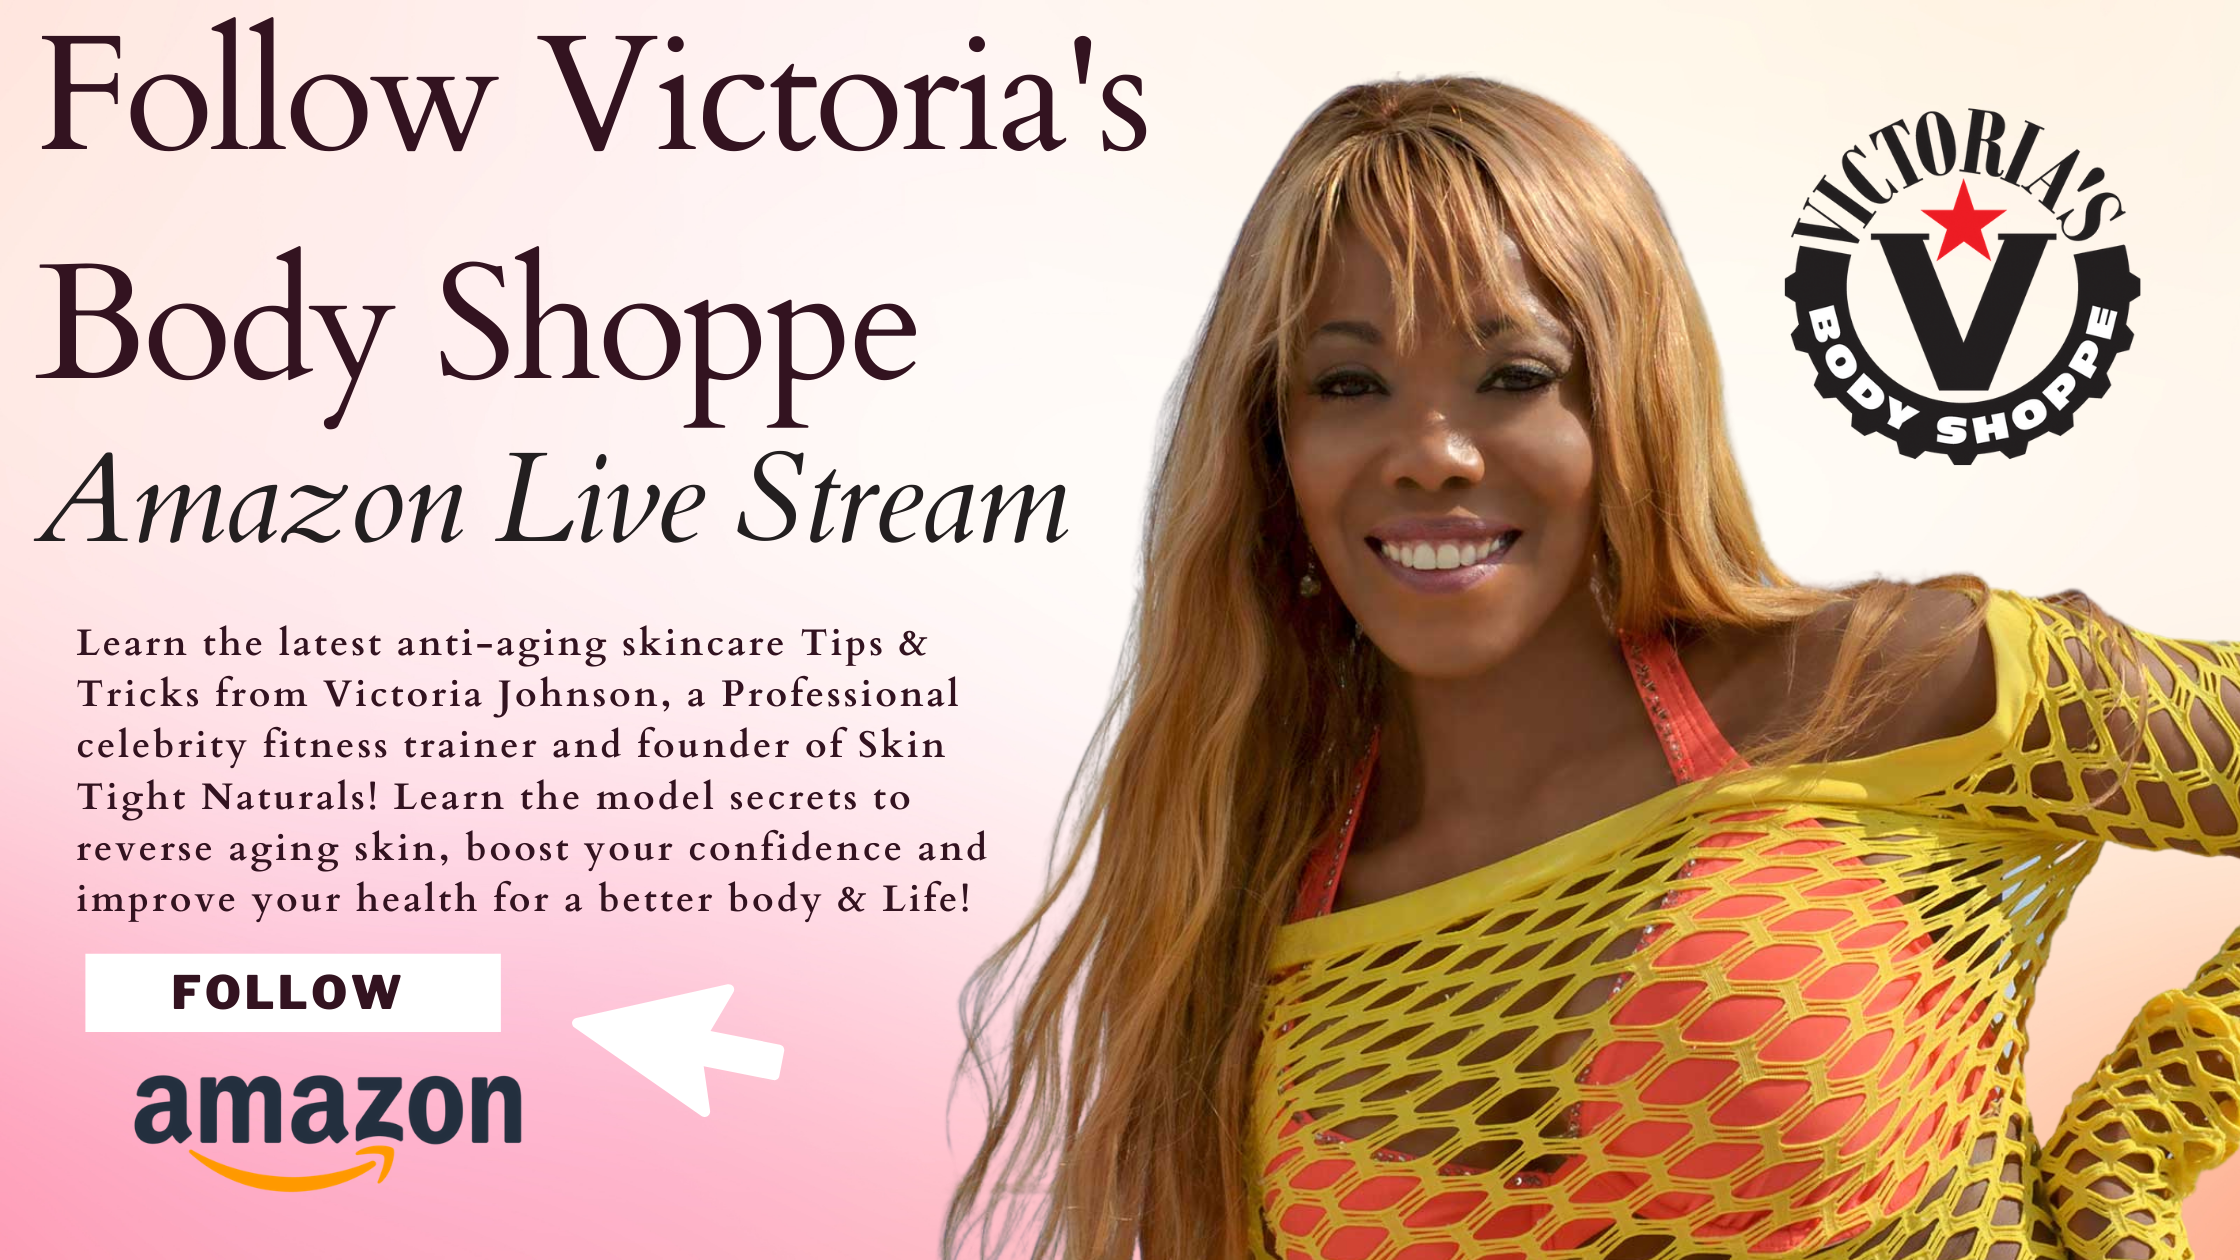 Victoria's Body Shoppe Amazon Live Streams